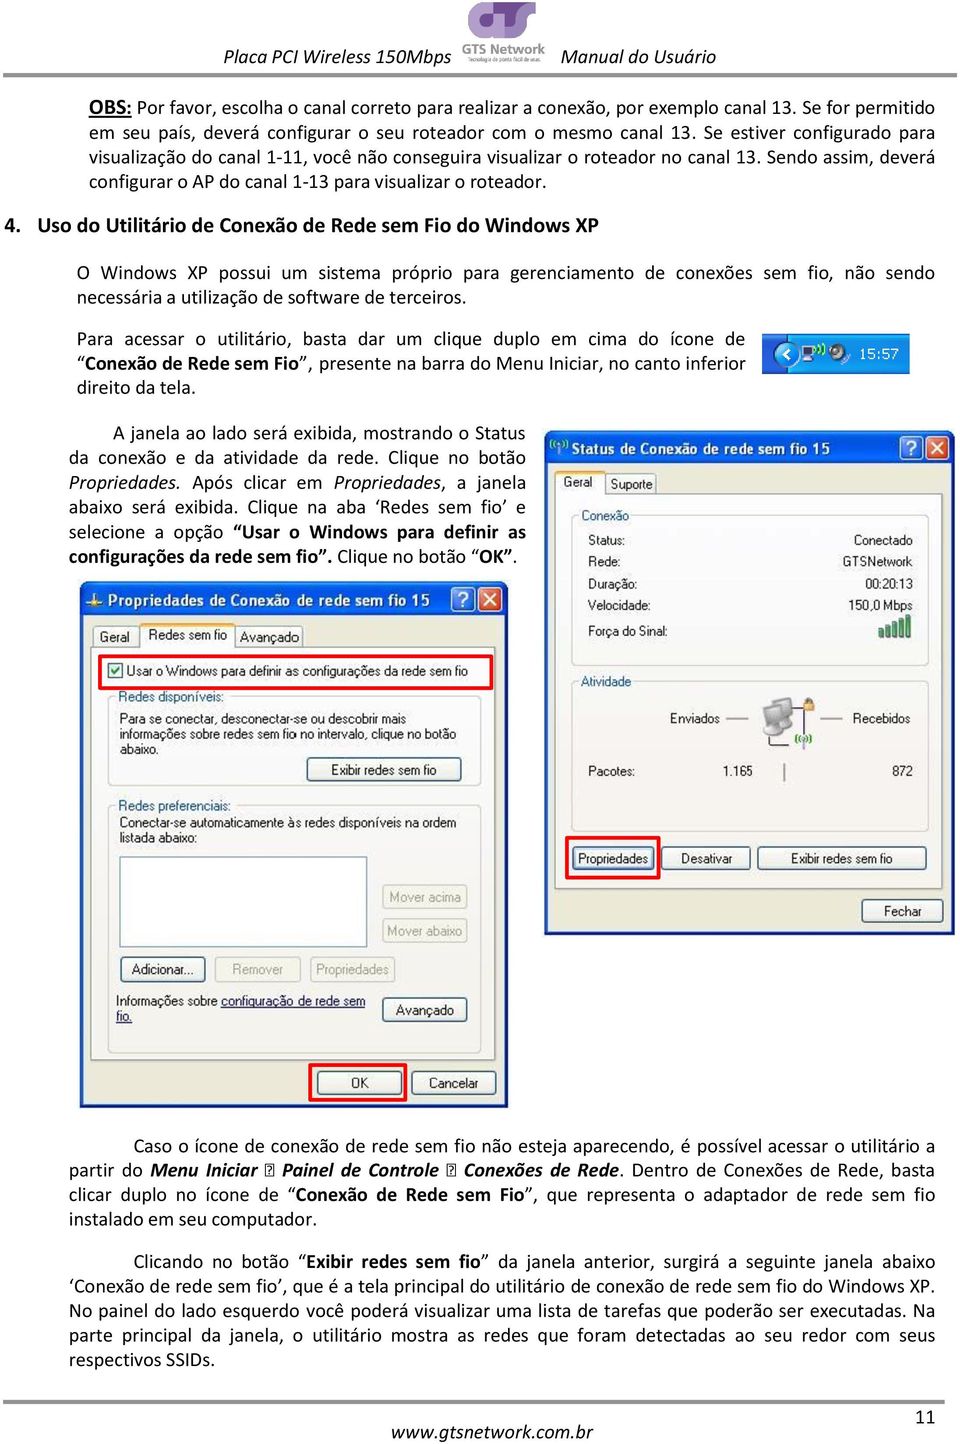 Uso do Utilitário de Conexão de Rede sem Fio do Windows XP O Windows XP possui um sistema próprio para gerenciamento de conexões sem fio, não sendo necessária a utilização de software de terceiros.